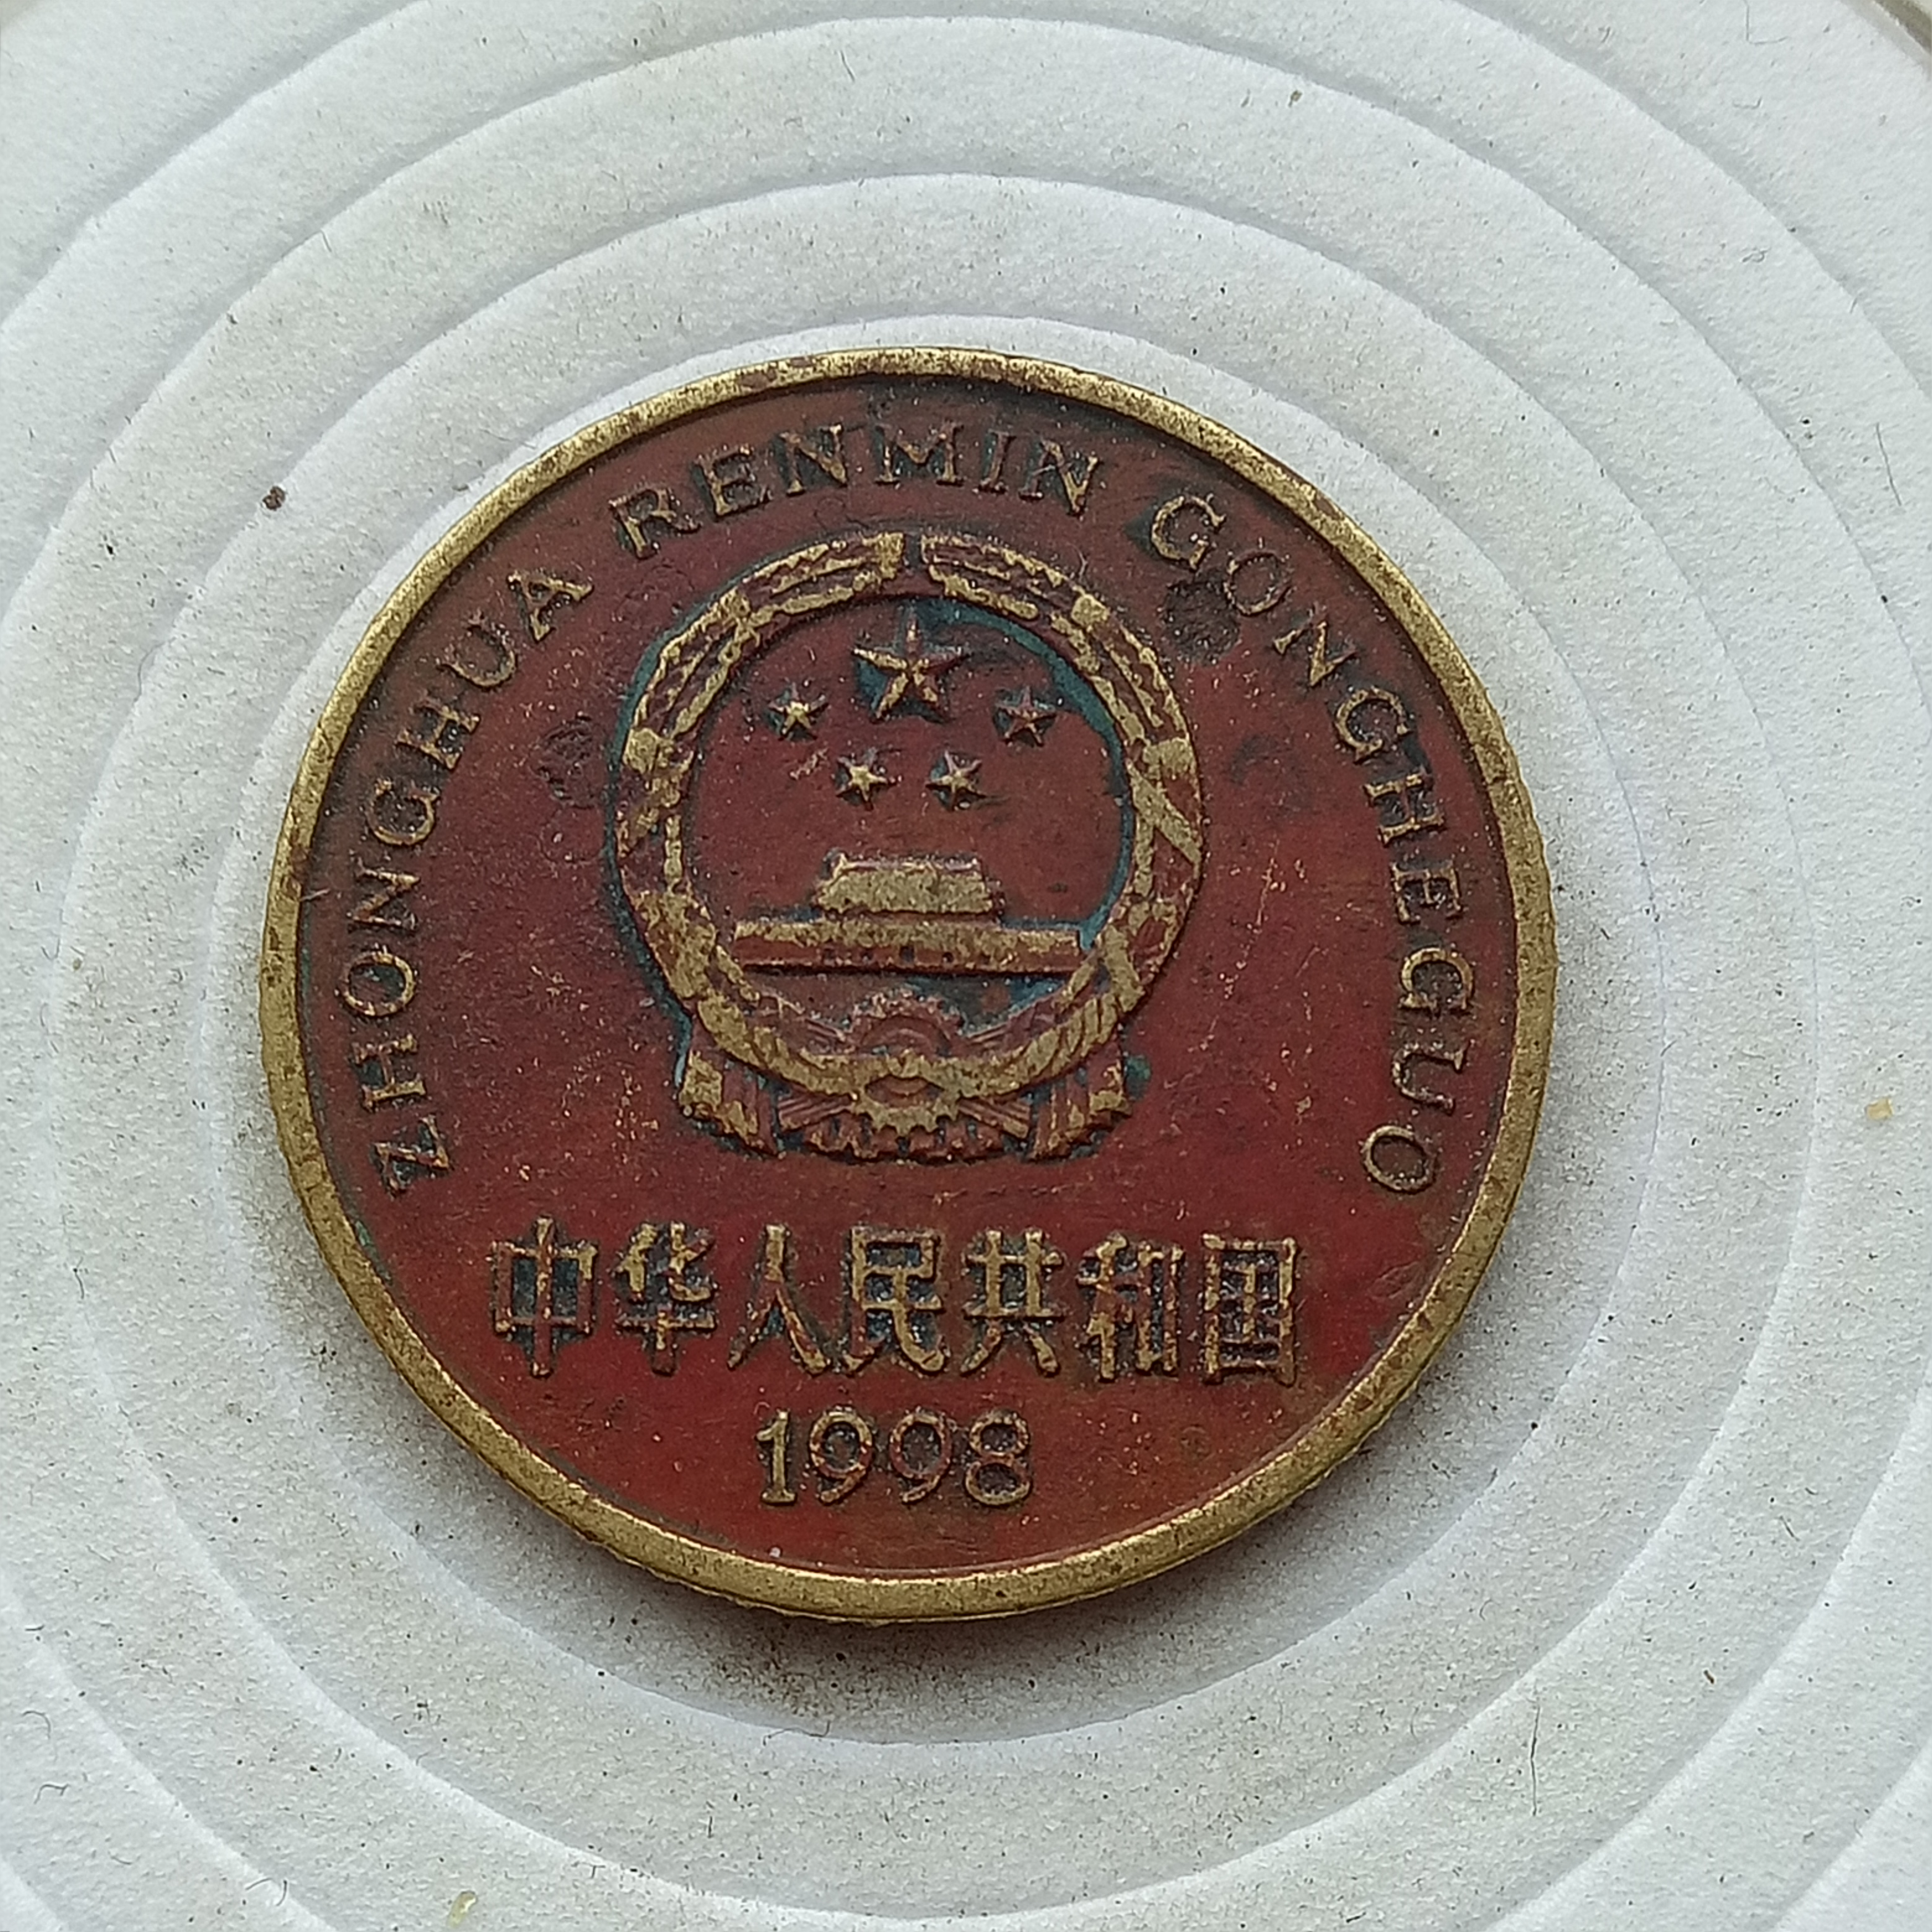 中国红梅集团的徽章图片